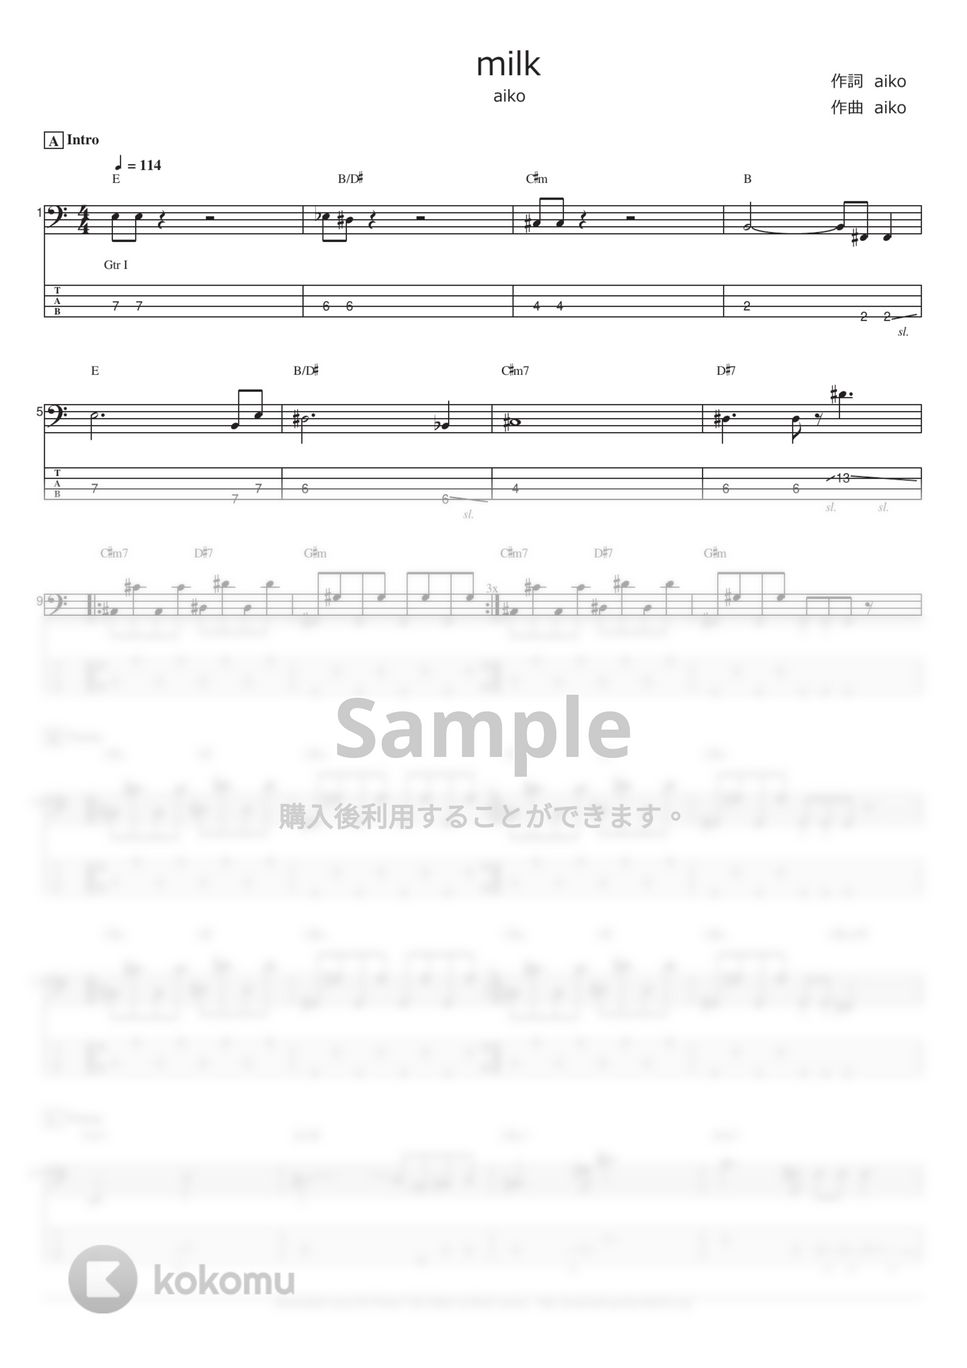 aiko - milk (ベース Tab譜 4弦) by T's bass score